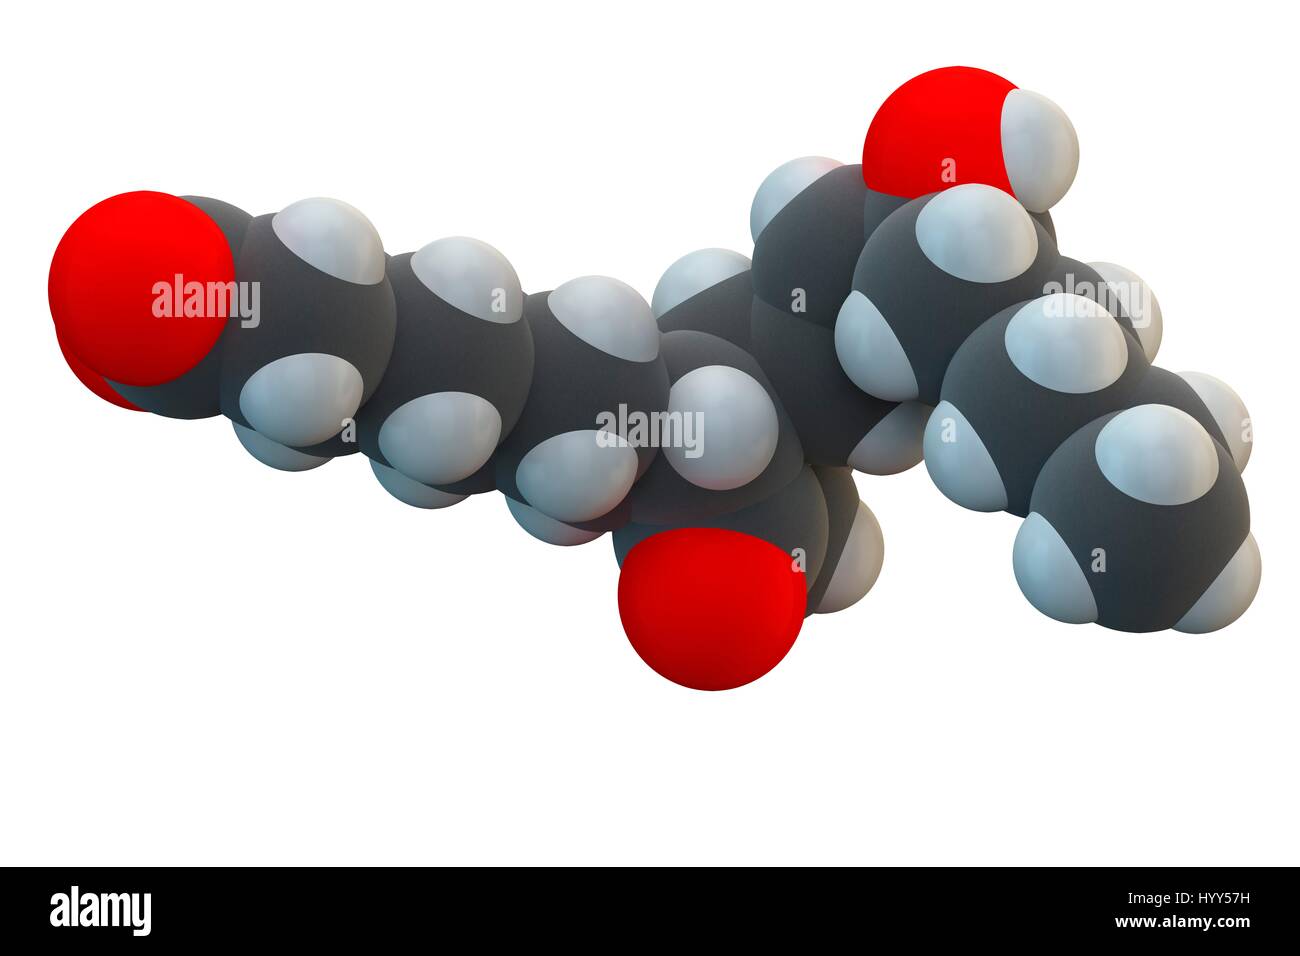 Alprostadil (Prostaglandin E1) erektile Dysfunktion Medikamentenmolekül. Chemische Formel ist C20H34O5. Atome werden als Kugeln dargestellt: Kohlenstoff (grau), Wasserstoff (weiß), Sauerstoff (rot). Abbildung. Stockfoto